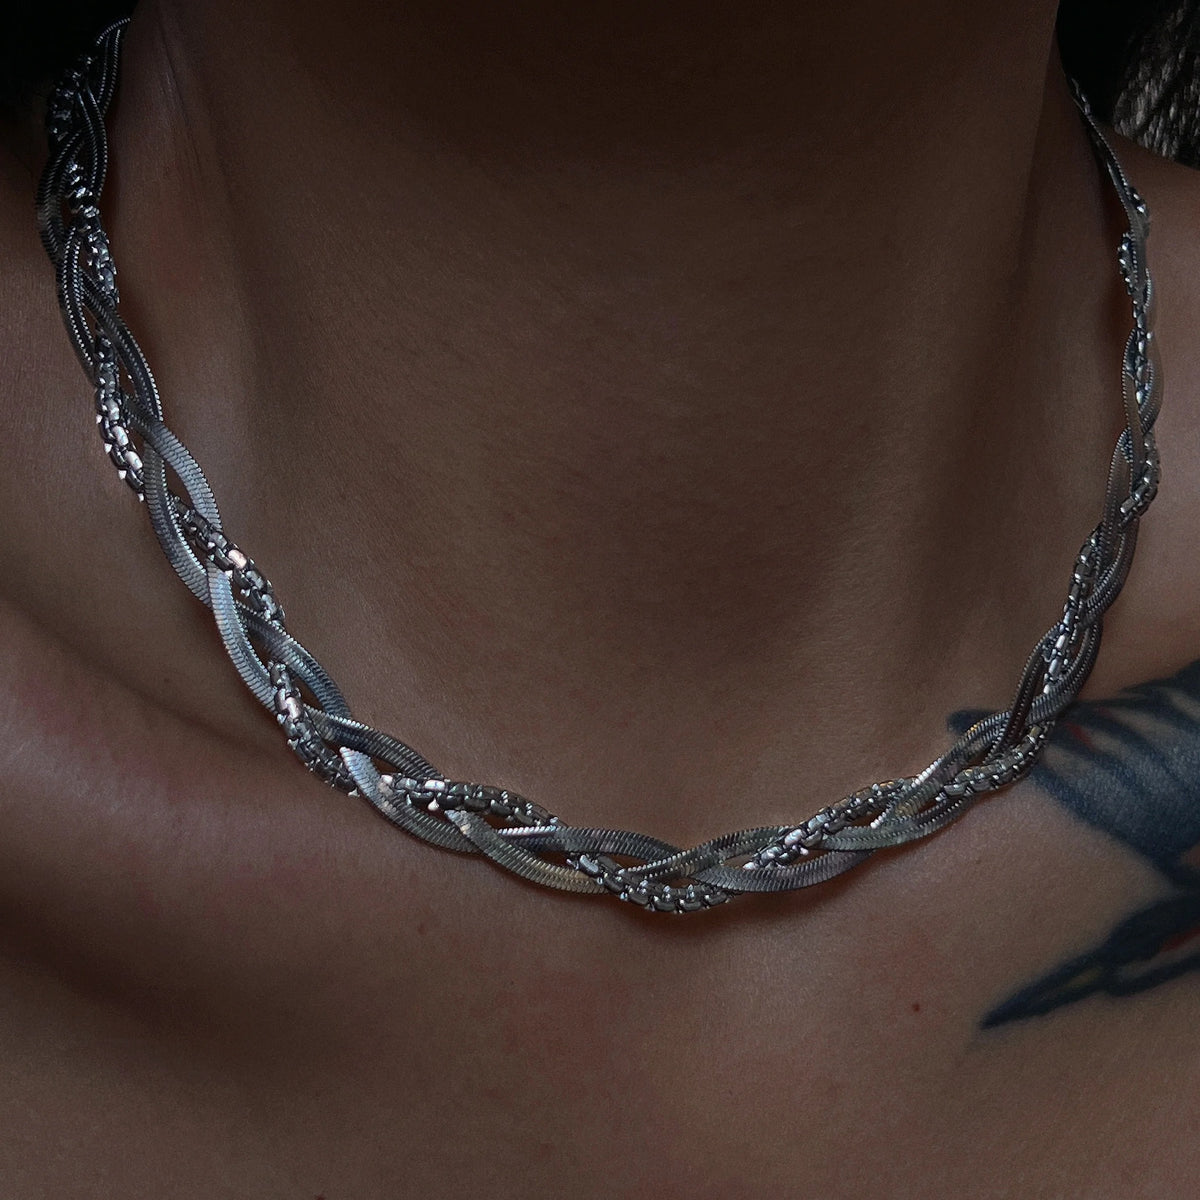 Braided chain